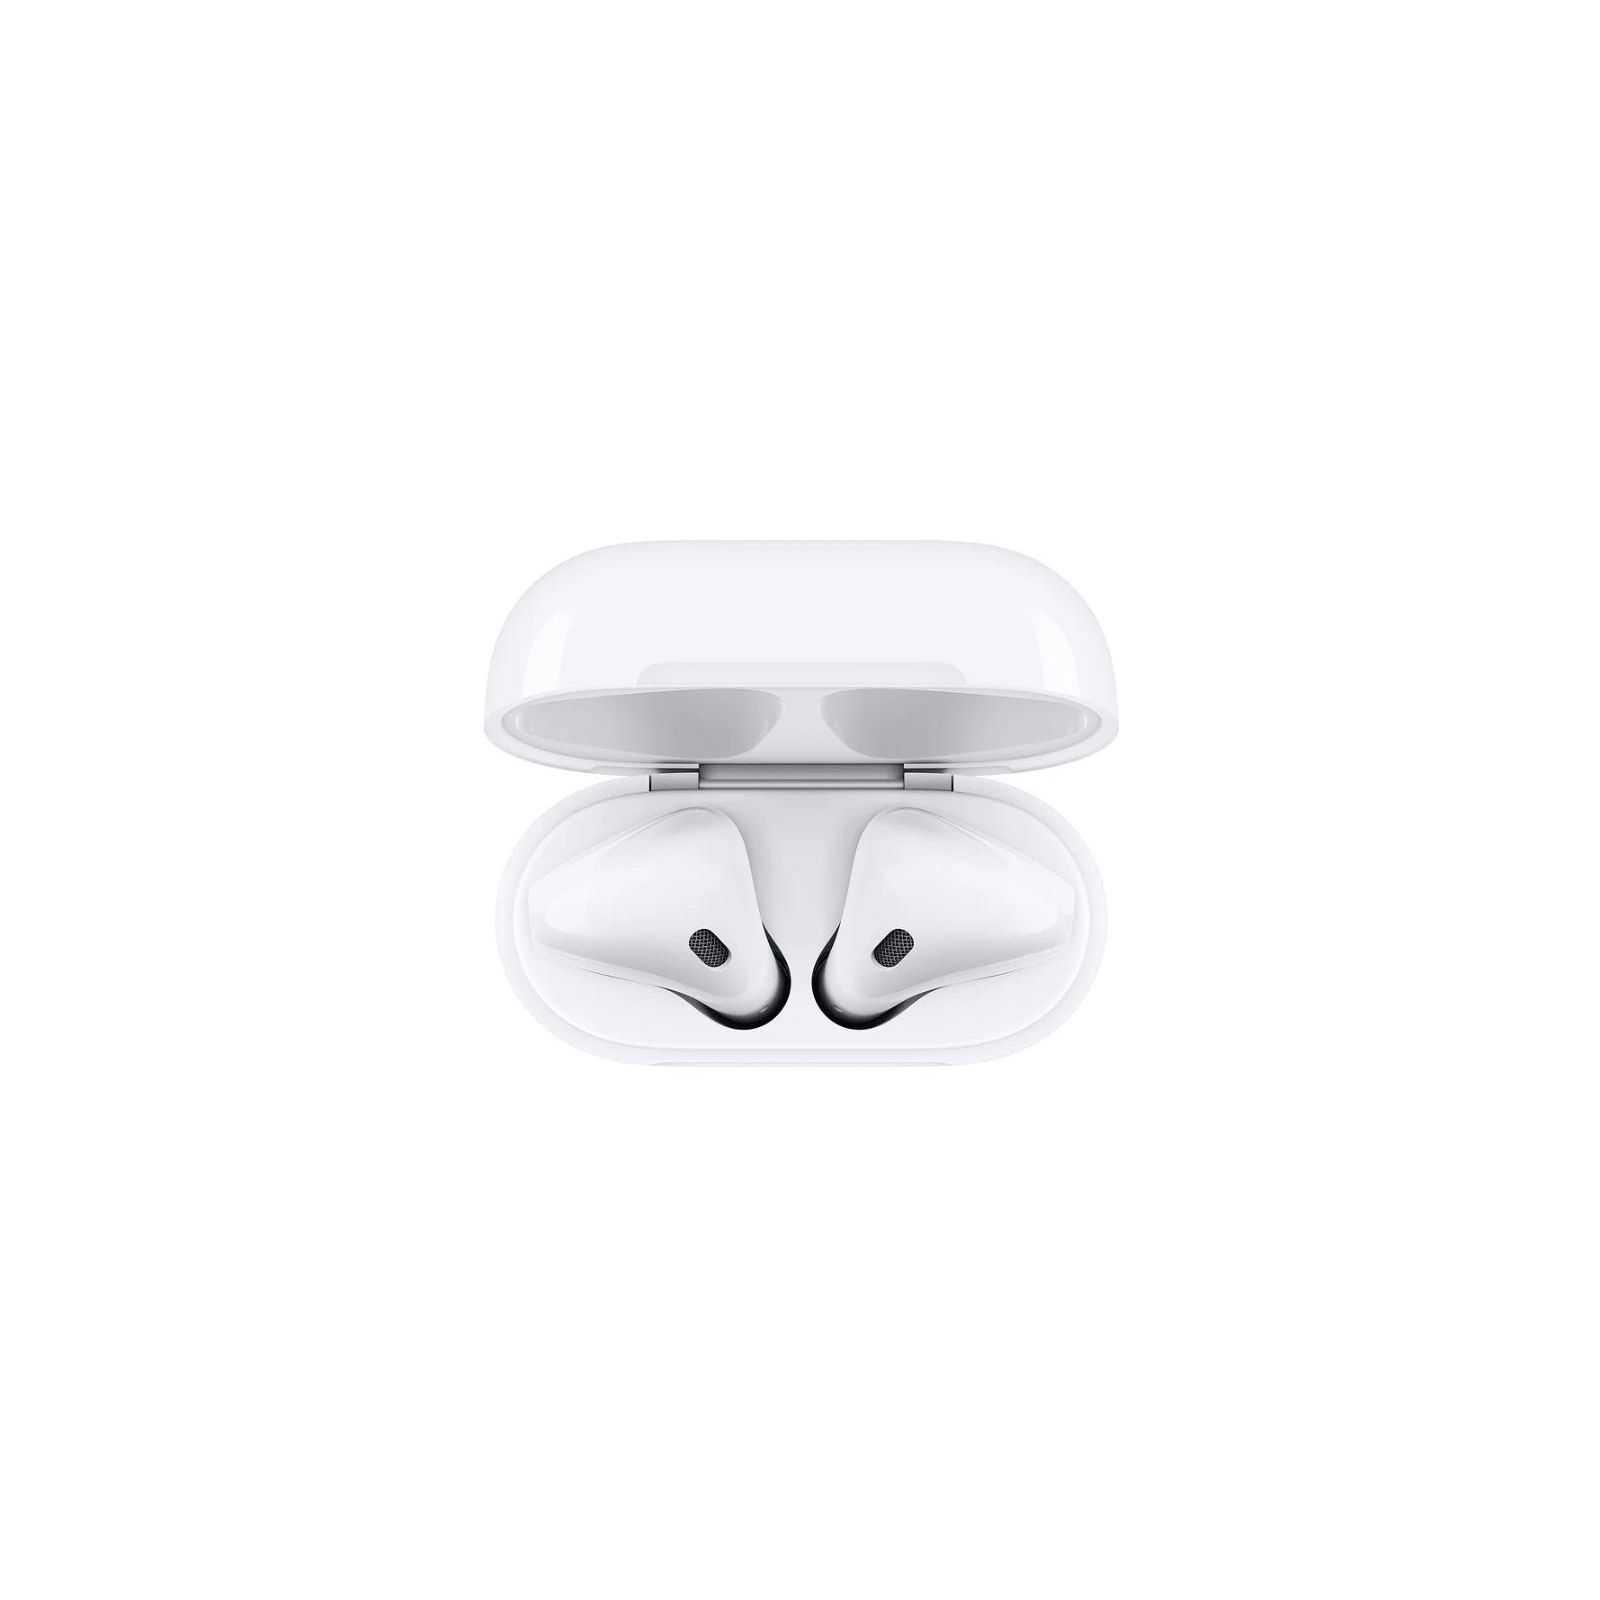 Навушники Apple AirPods with Wireless Charging Case (MRXJ2RU/A) зображення 3